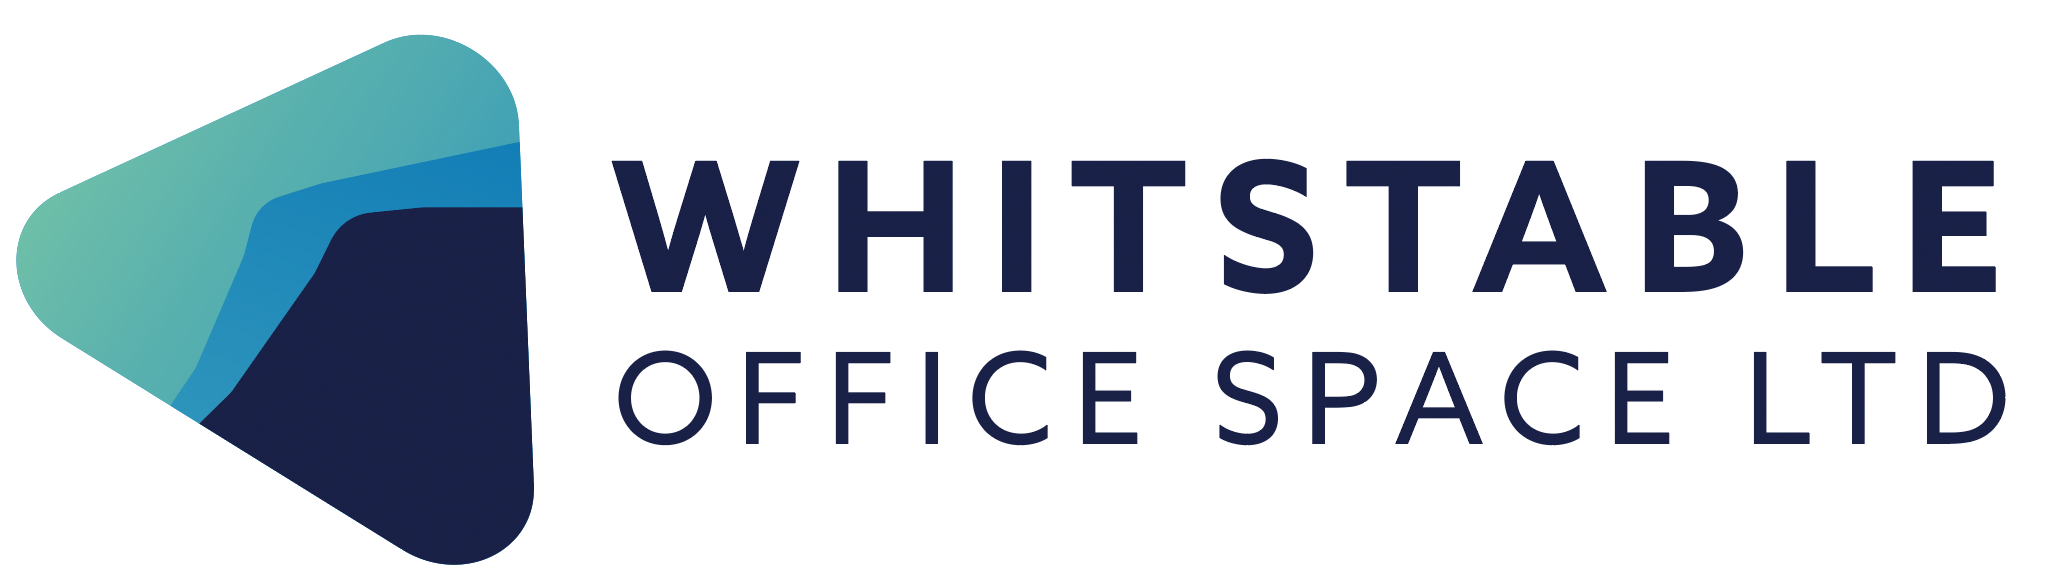 Whitstable Office Space Ltd logo